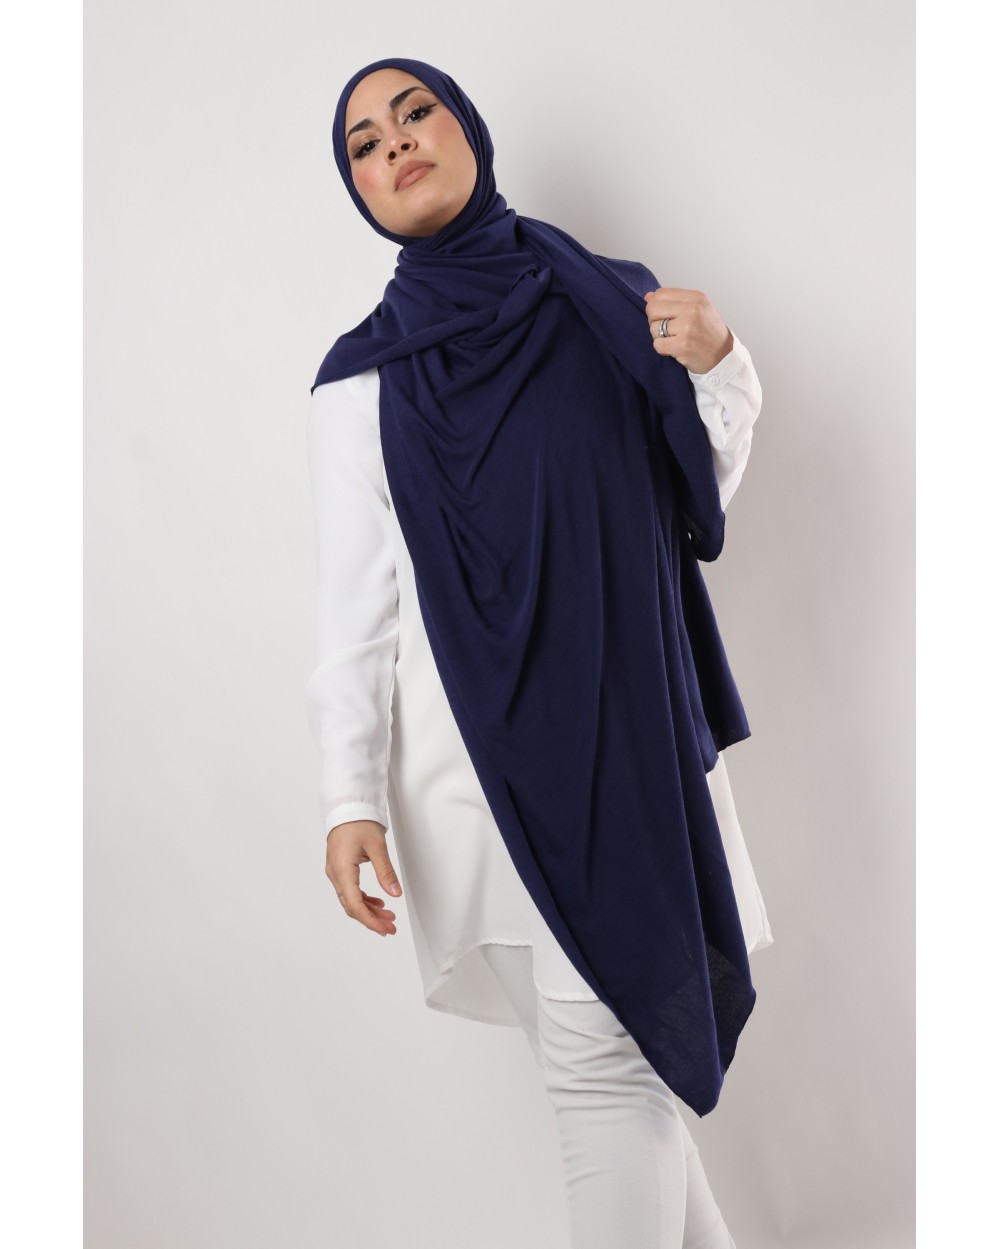 Winter Maxi hijab XXL